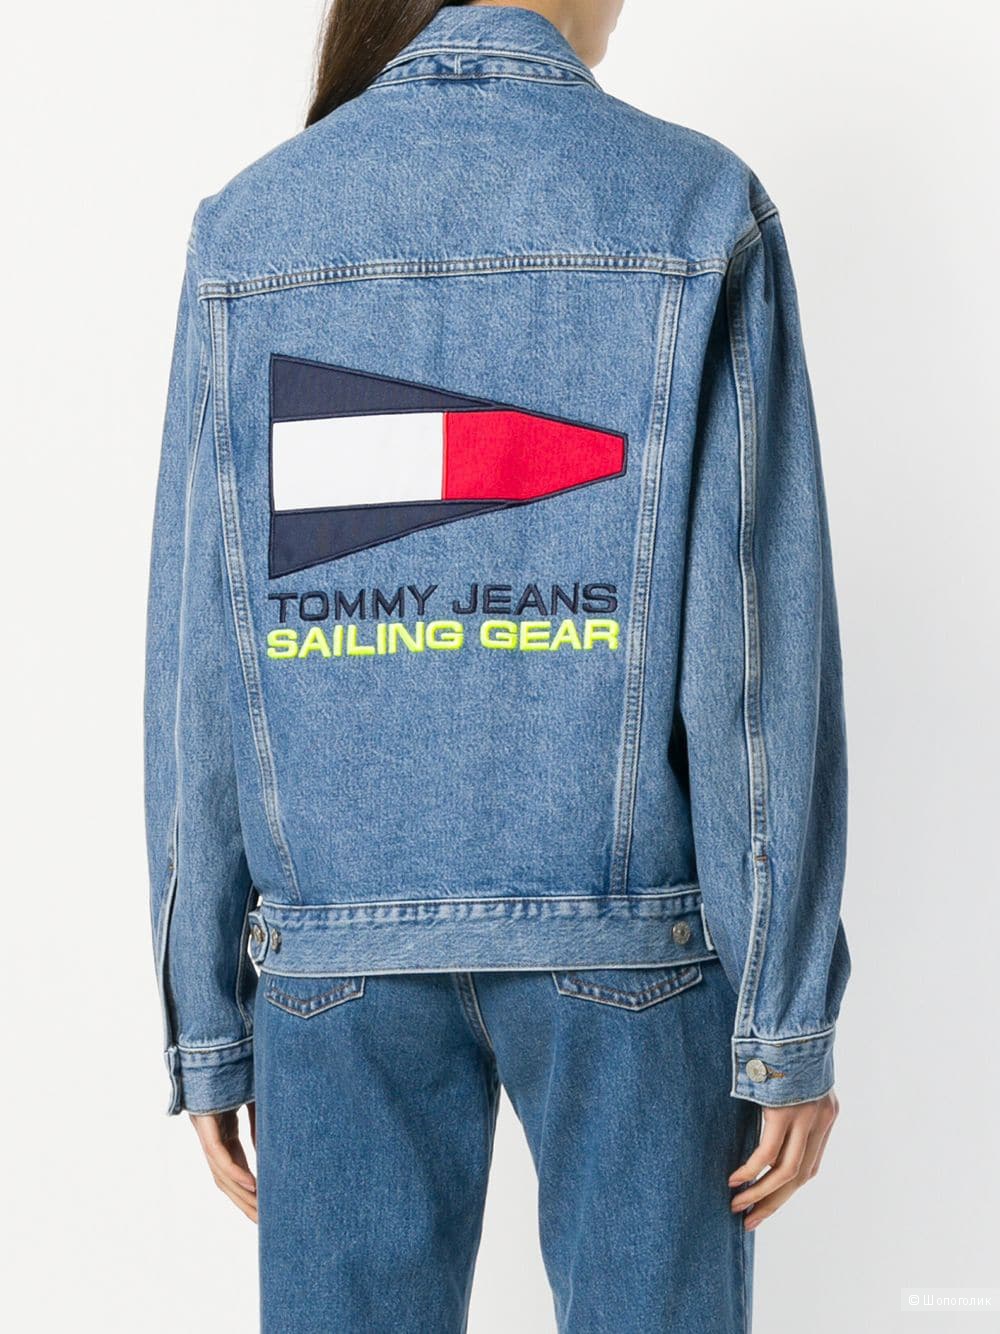 Джинсовая куртка Tommy Jeans, размер М